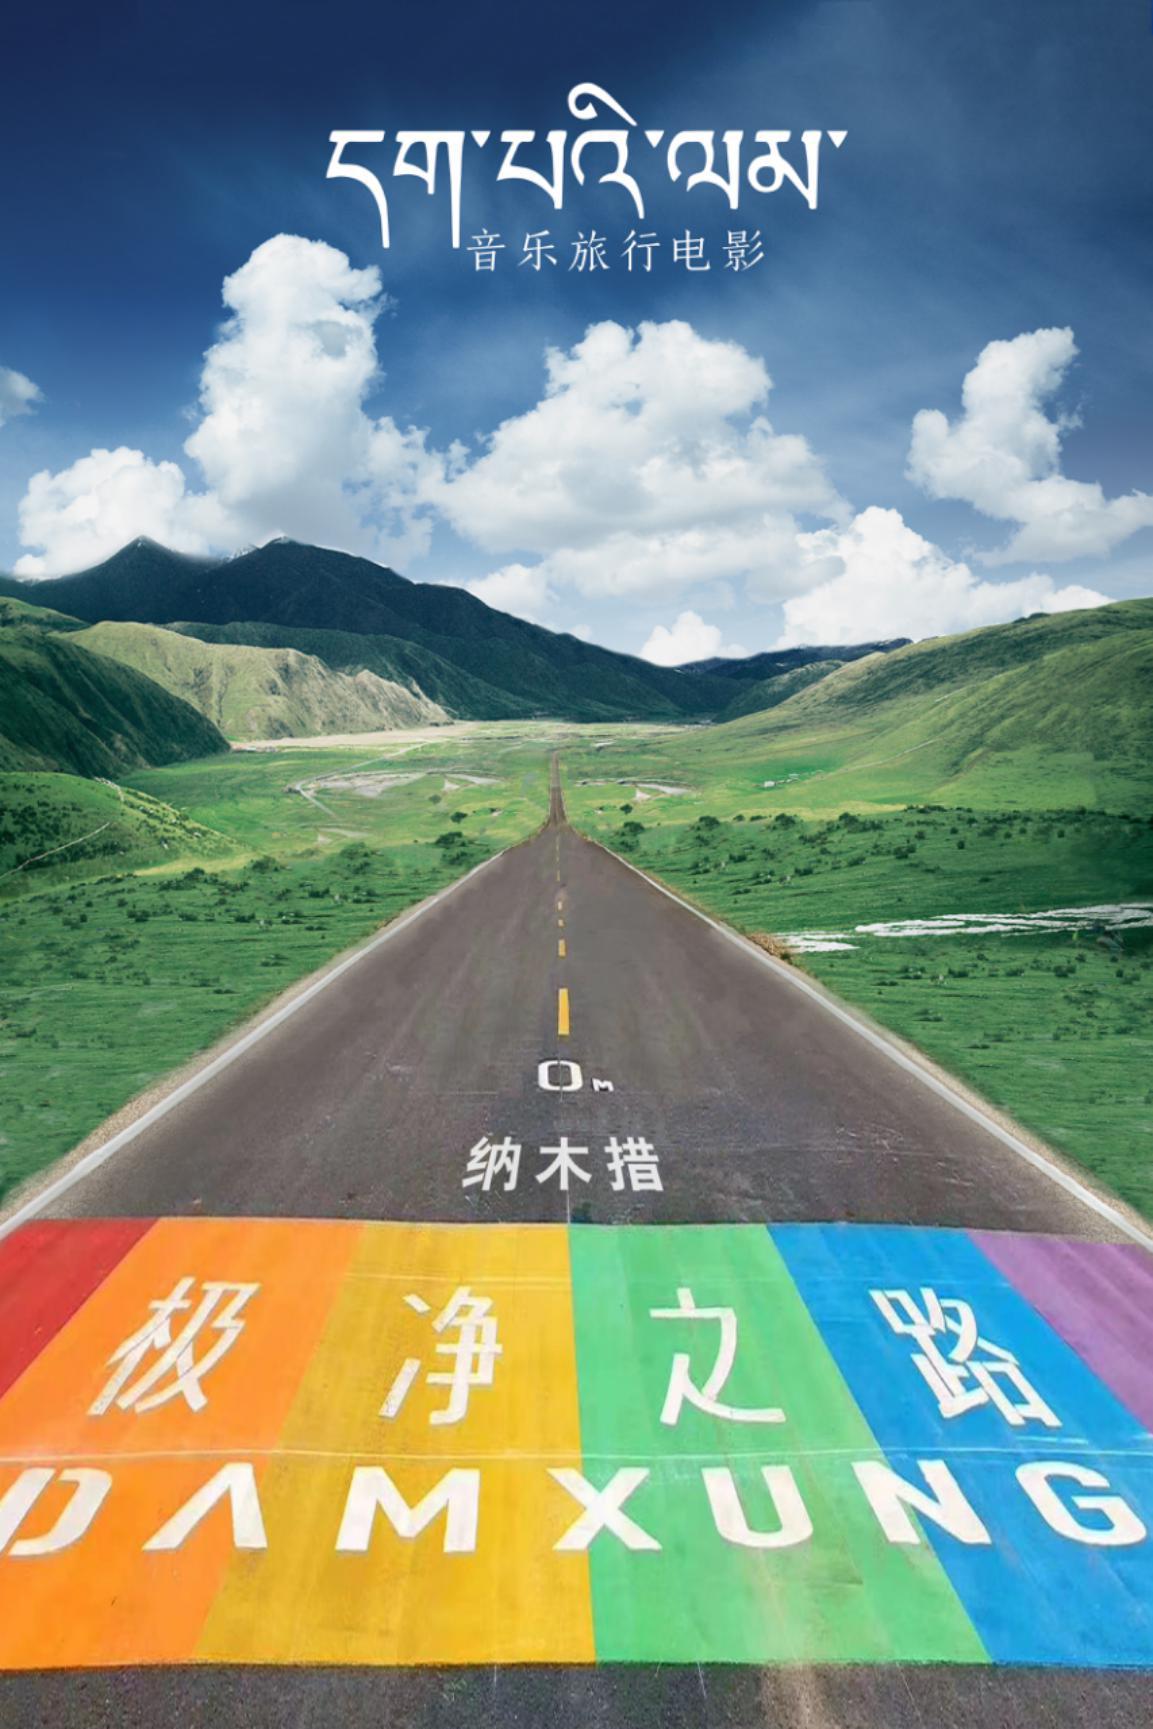 首部藏地音乐旅行电影《极净之路》于西藏当雄县举行开机仪式